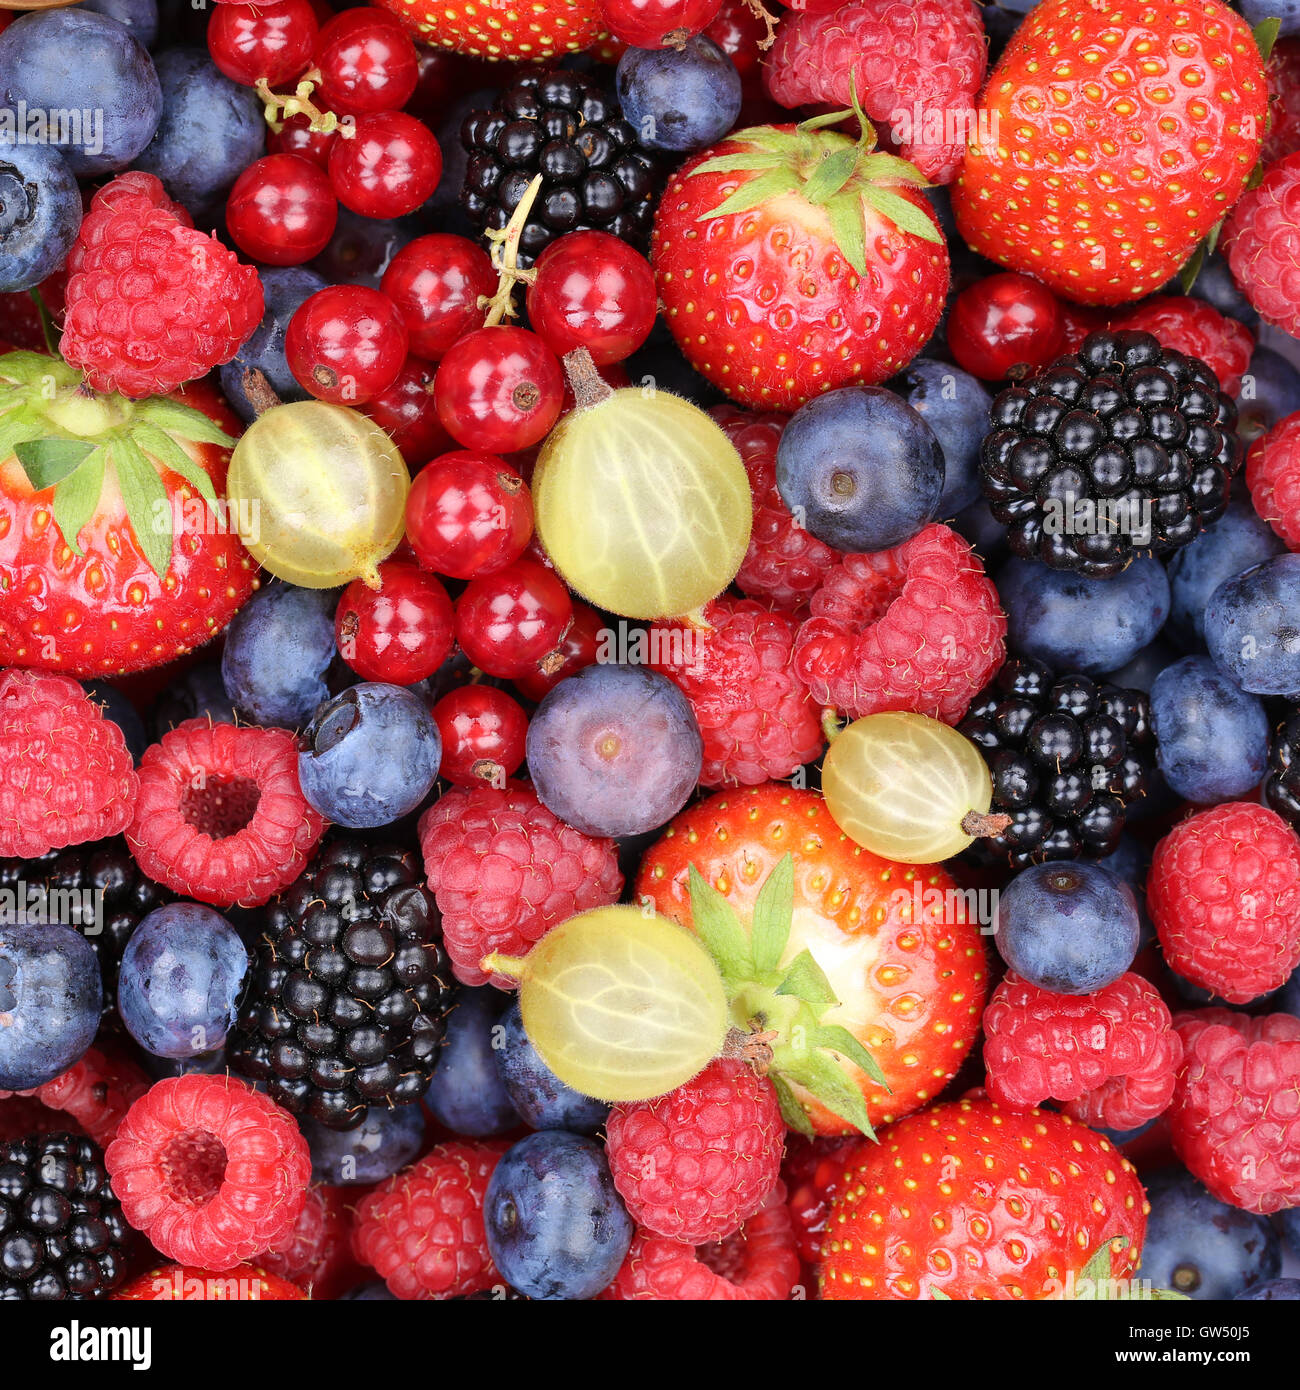 Des fruits à baies collection fruits fraises, bleuets framboises Groseilles rouges vue supérieure Banque D'Images